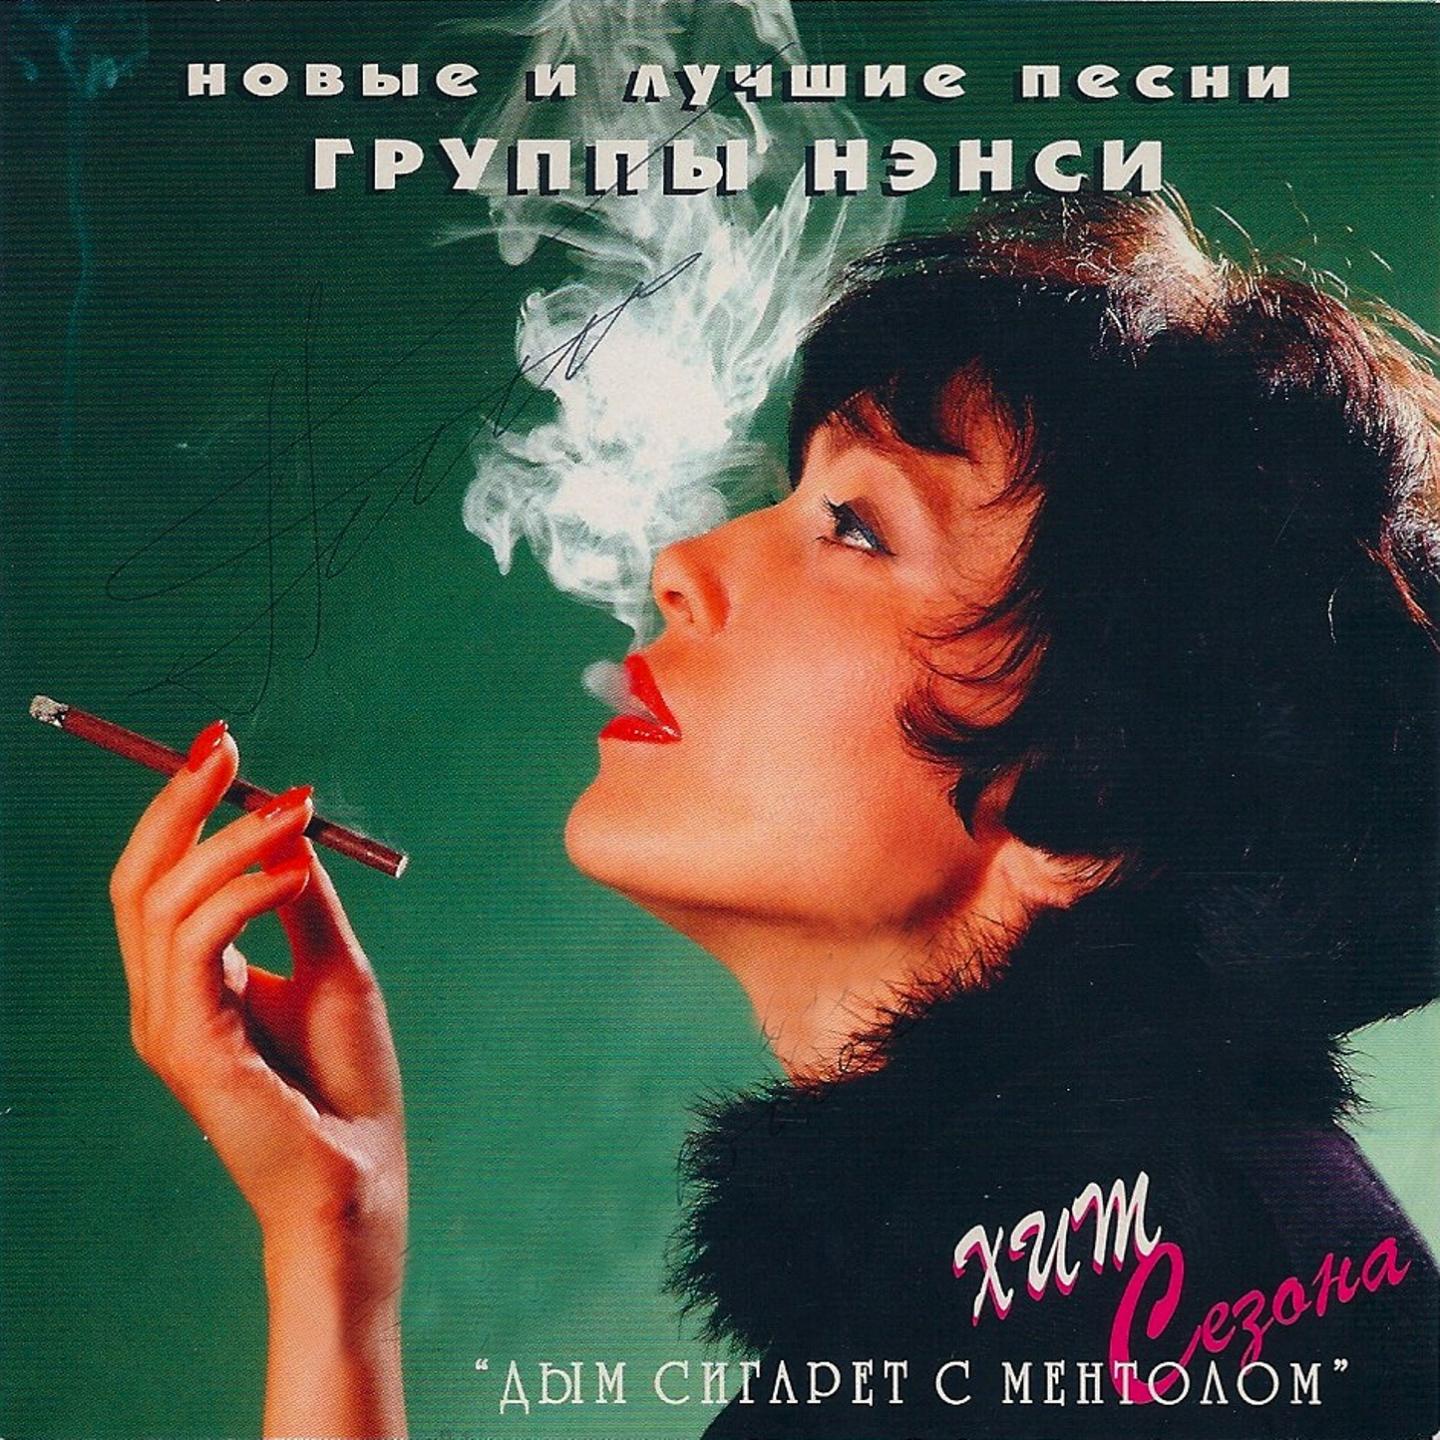 Ненси дим сигарет з ментолом. Сигаретный дым mp3